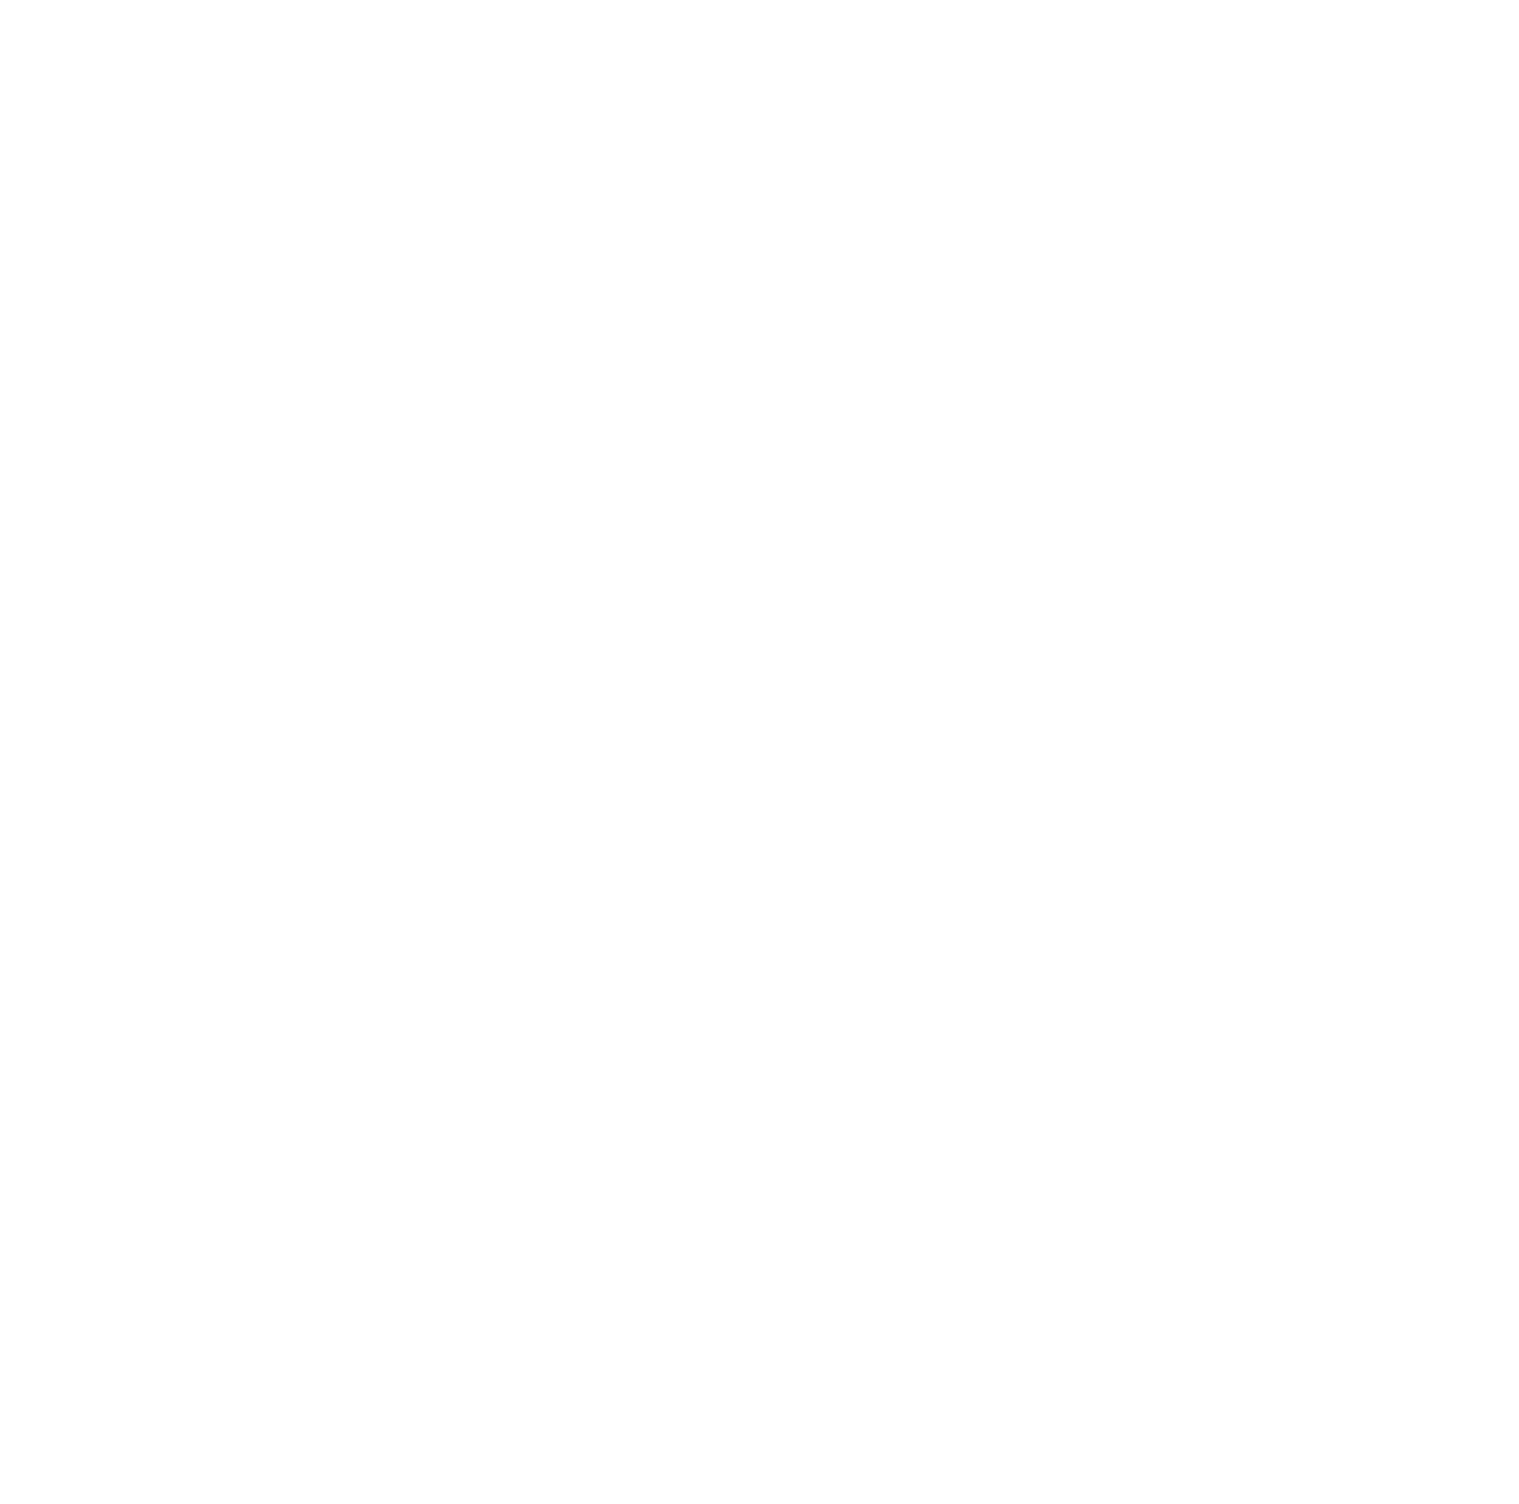 Wemade logo for dark backgrounds (transparent PNG)